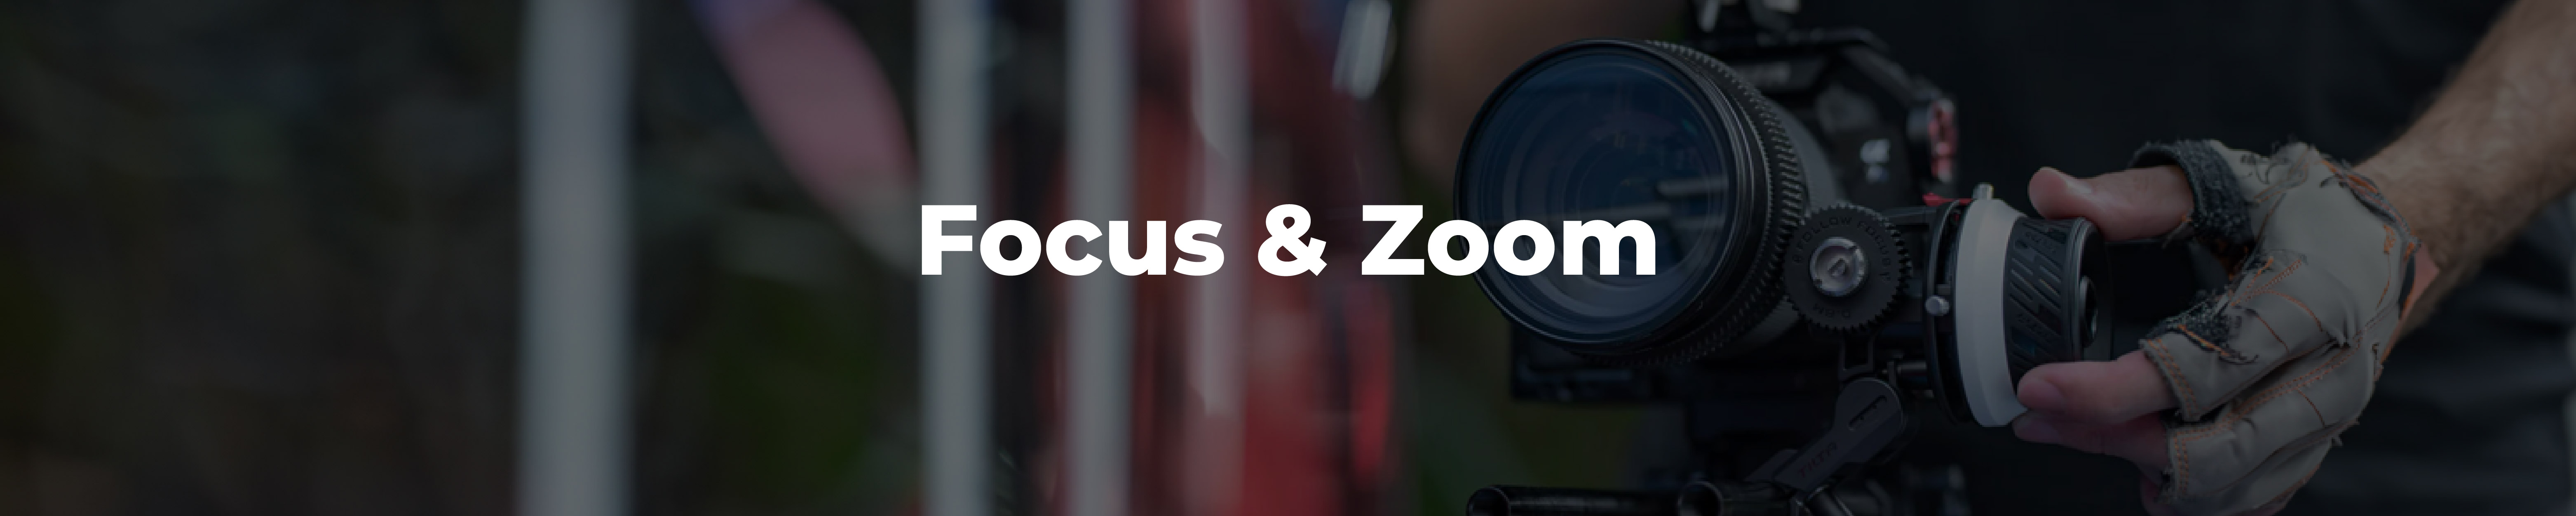 Focus & Zoom